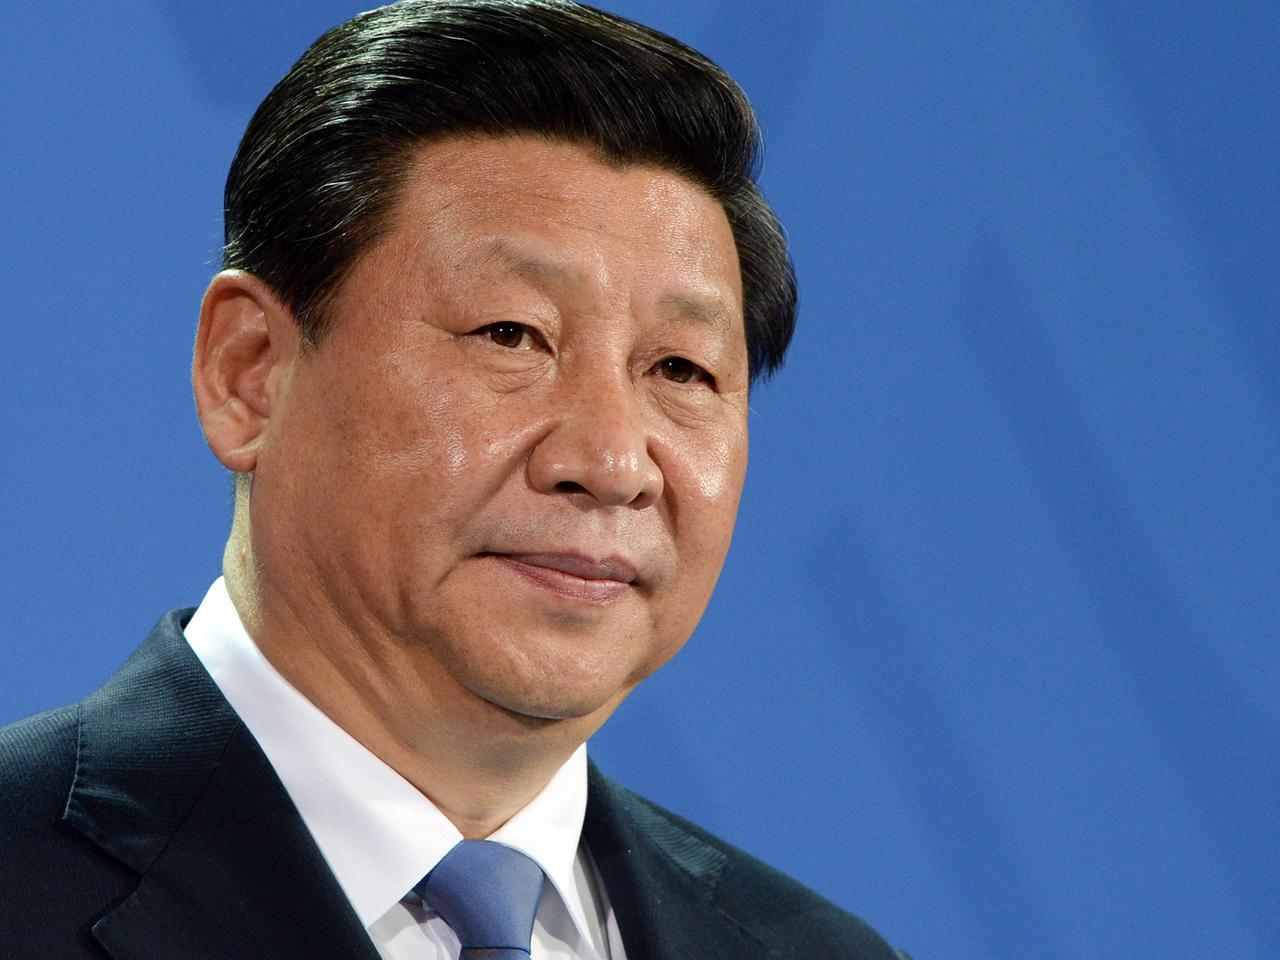 Der chinesische Staats- und Parteichef Xi Jinping, aufgenommen am 28.03.2014 während einer gemeinsamen Pressekonferenz mit Bundeskanzlerin Merkel.